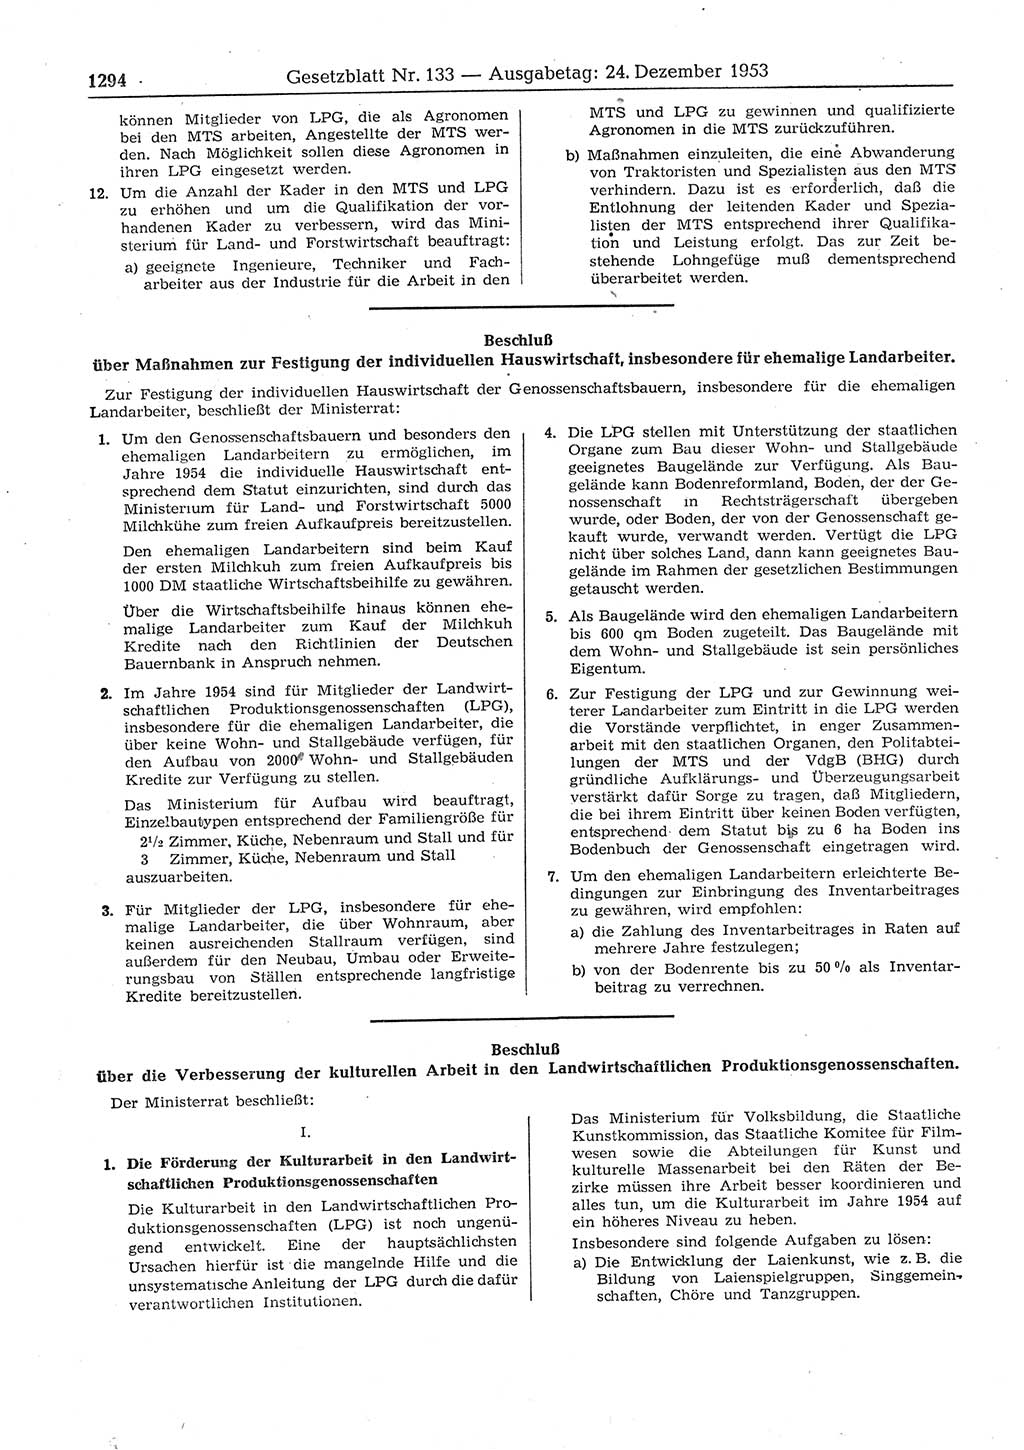 Gesetzblatt (GBl.) der Deutschen Demokratischen Republik (DDR) 1953, Seite 1294 (GBl. DDR 1953, S. 1294)